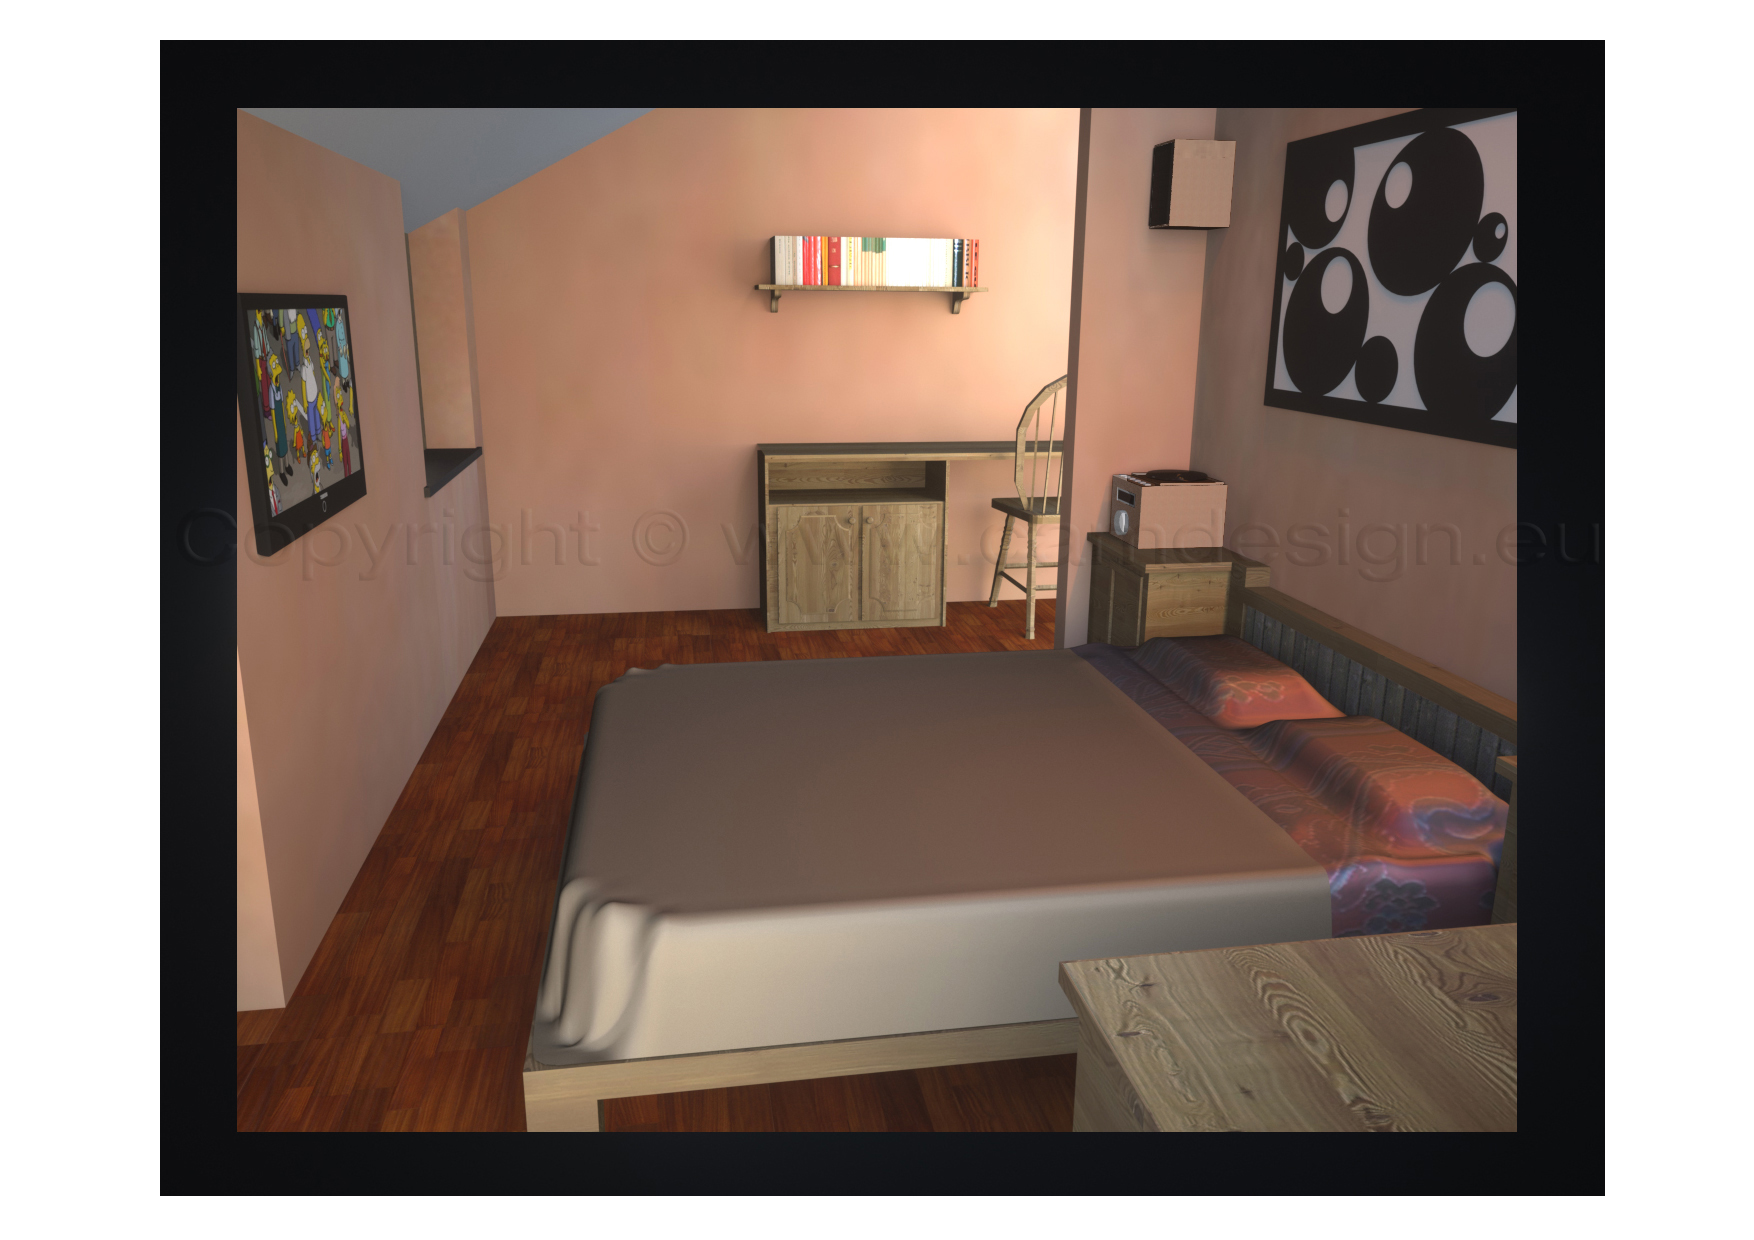 Rappresentazione tridimensionale della camera da letto